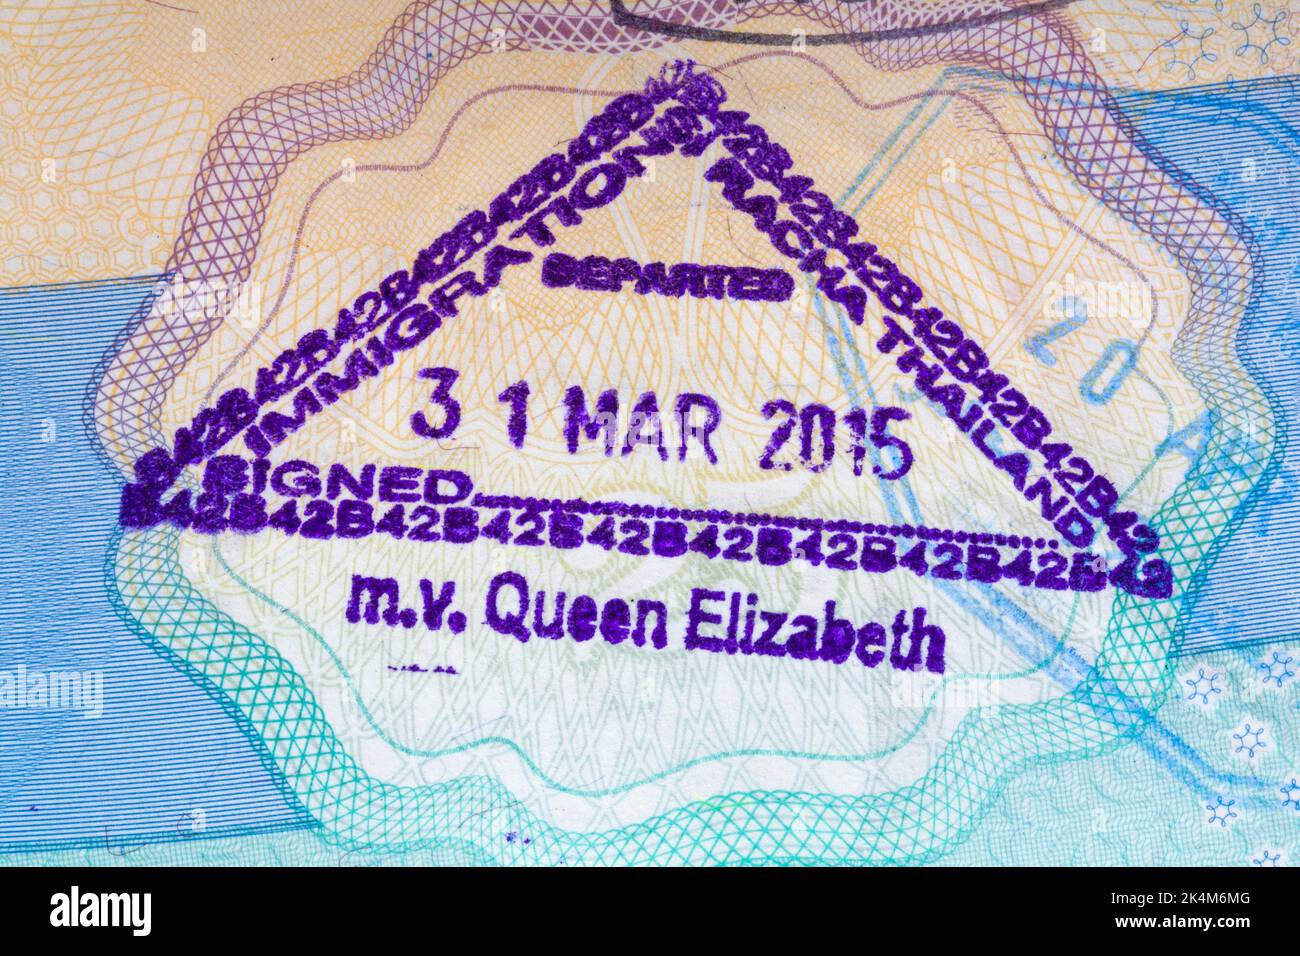 Einwanderung Si Racha Thailand verließ m.v. Queen Elizabeth 31 Mar 2015 Briefmarke im britischen Pass Stockfoto